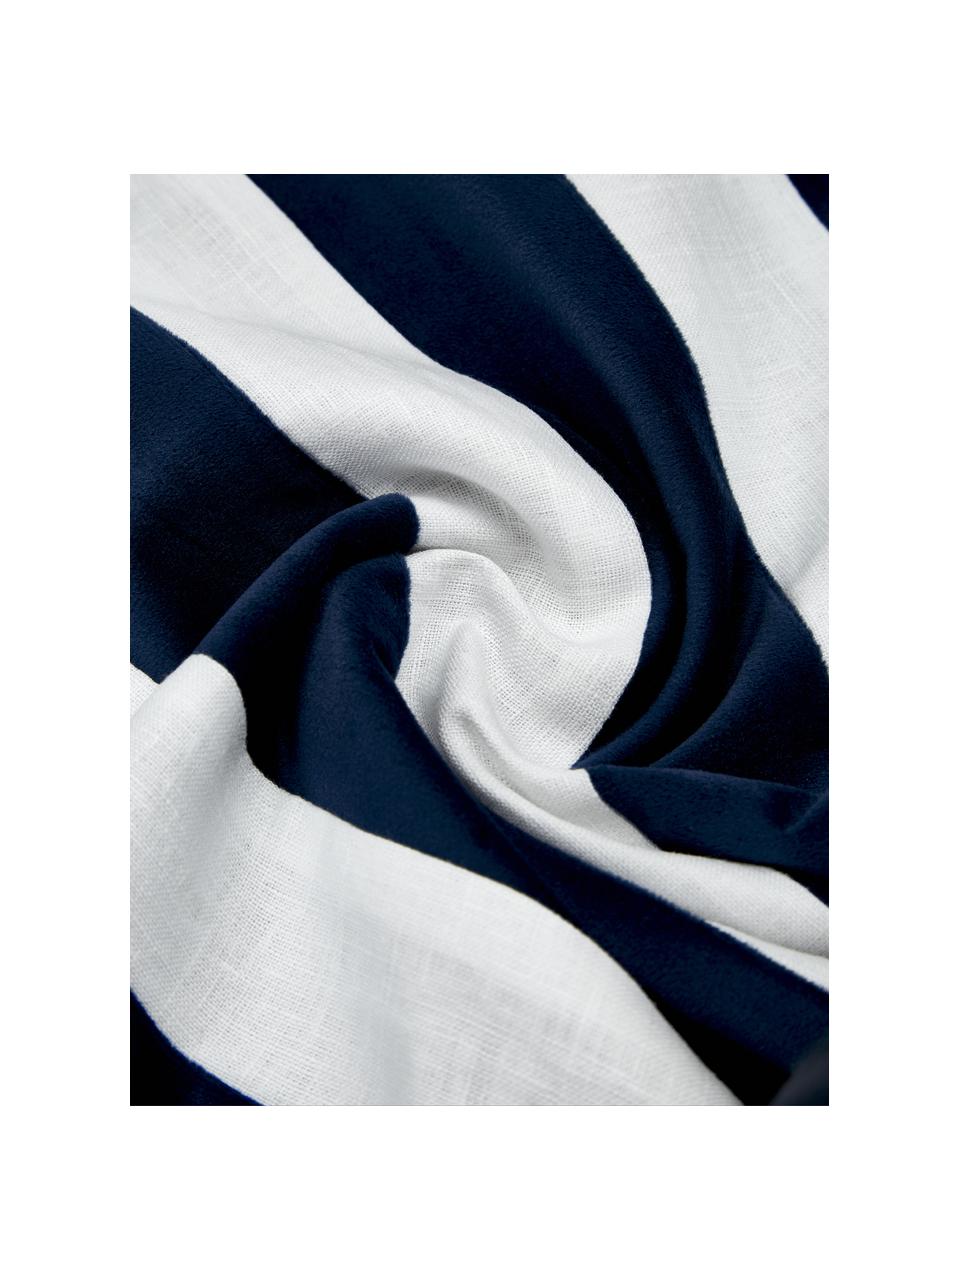 Kussenhoes Maui gemaakt van een fluweel-linnen mix in donkerblauw/wit, Donkerblauw, wit, B 30 x L 50 cm